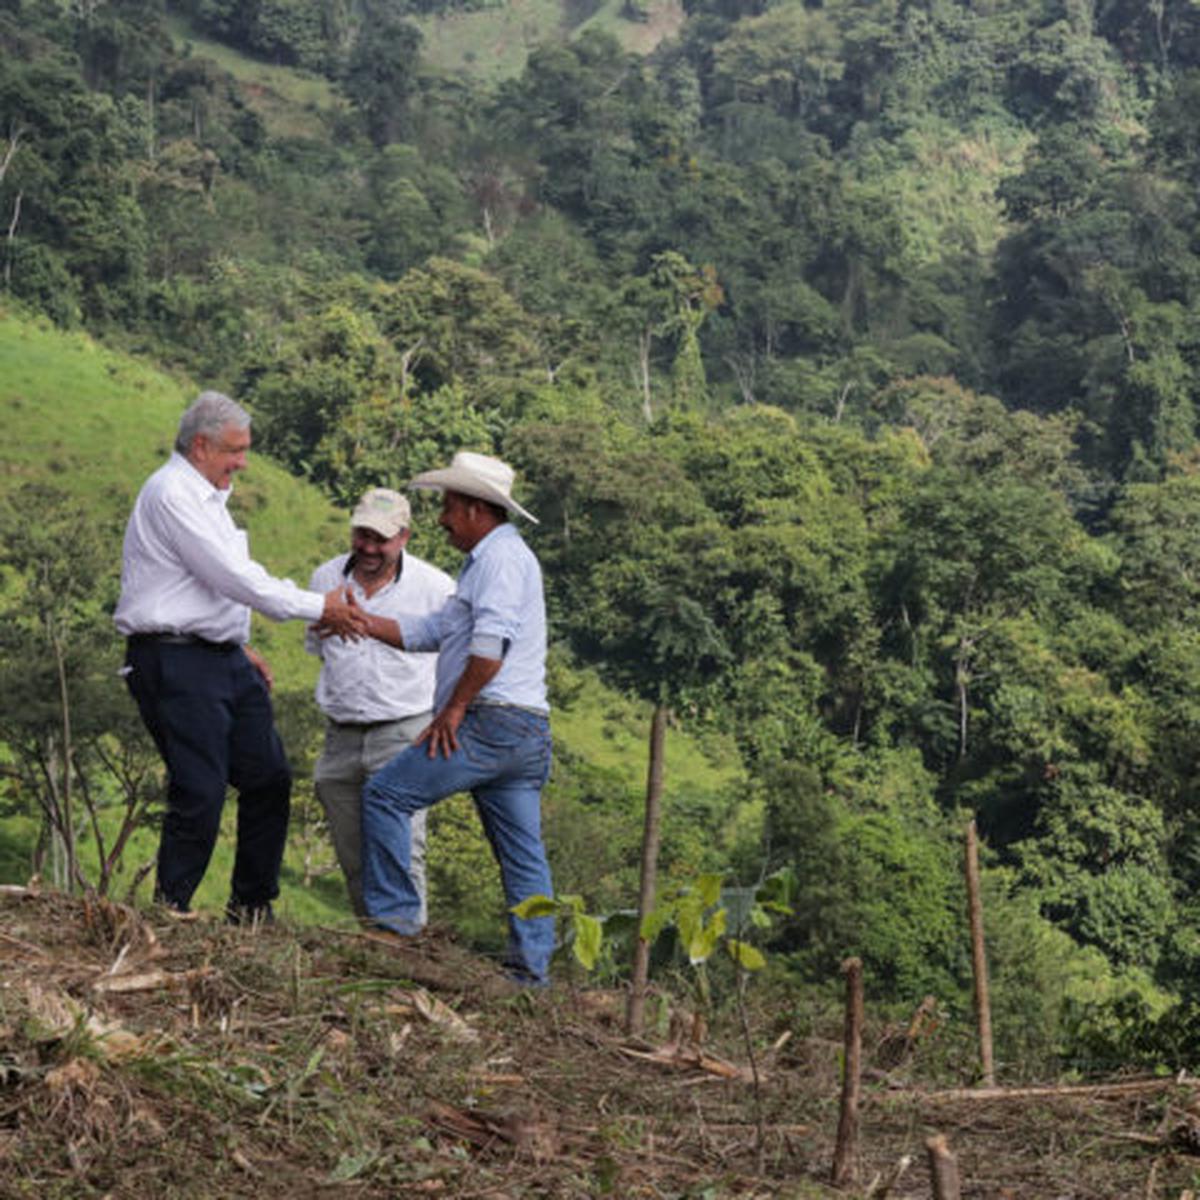  | AMLO supervisando avances de Sembrando Vida en Chiapas. Foto: Presidente de México